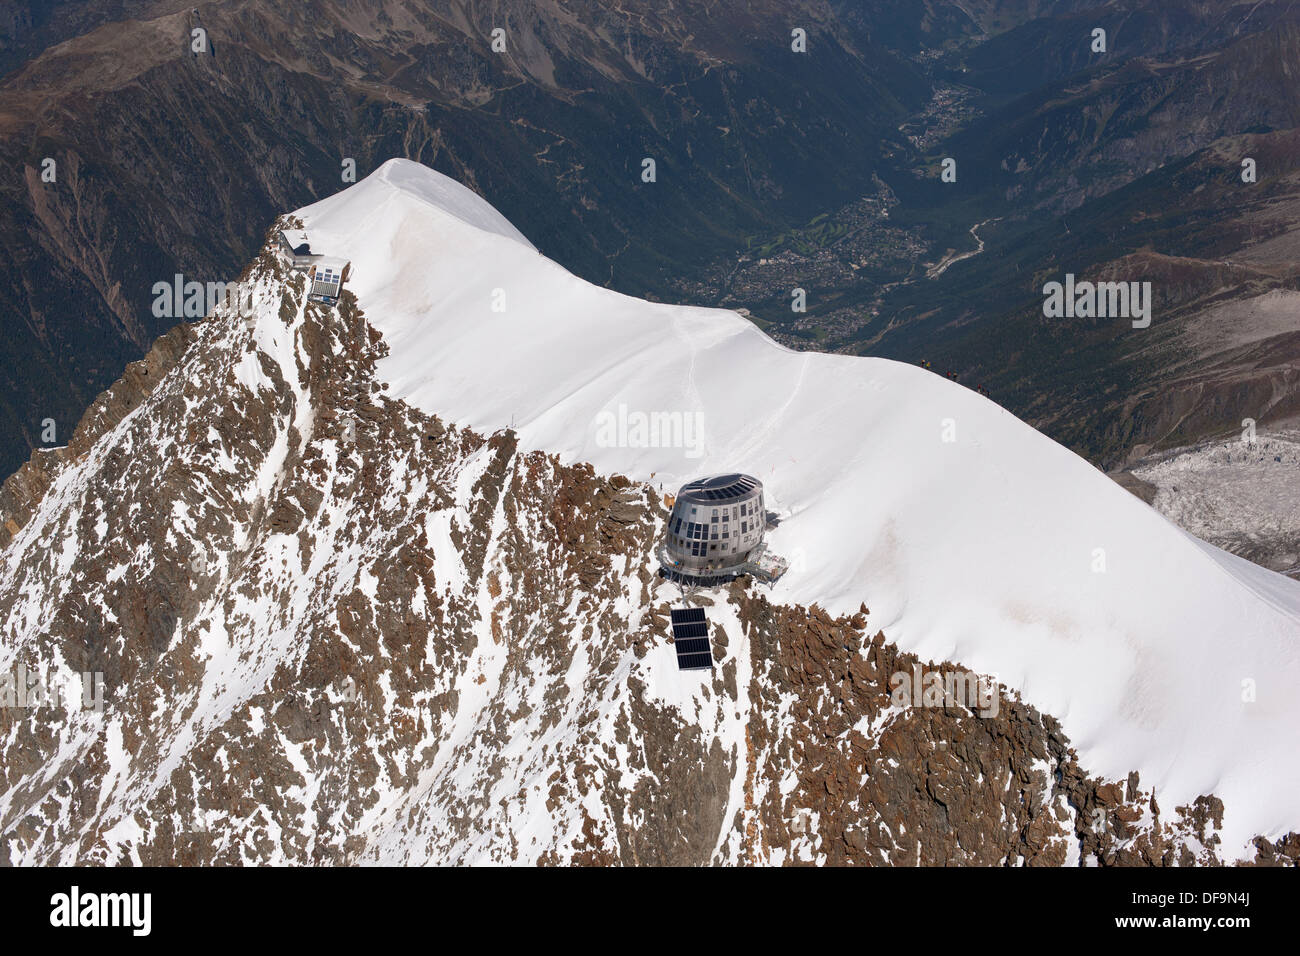 VUE AÉRIENNE.Sommet de l'aiguille du Goûter (altitude: 3863m) avec la nouvelle cabane de montagne futuriste.Chamonix (altitude: 1035m) au loin.France. Banque D'Images